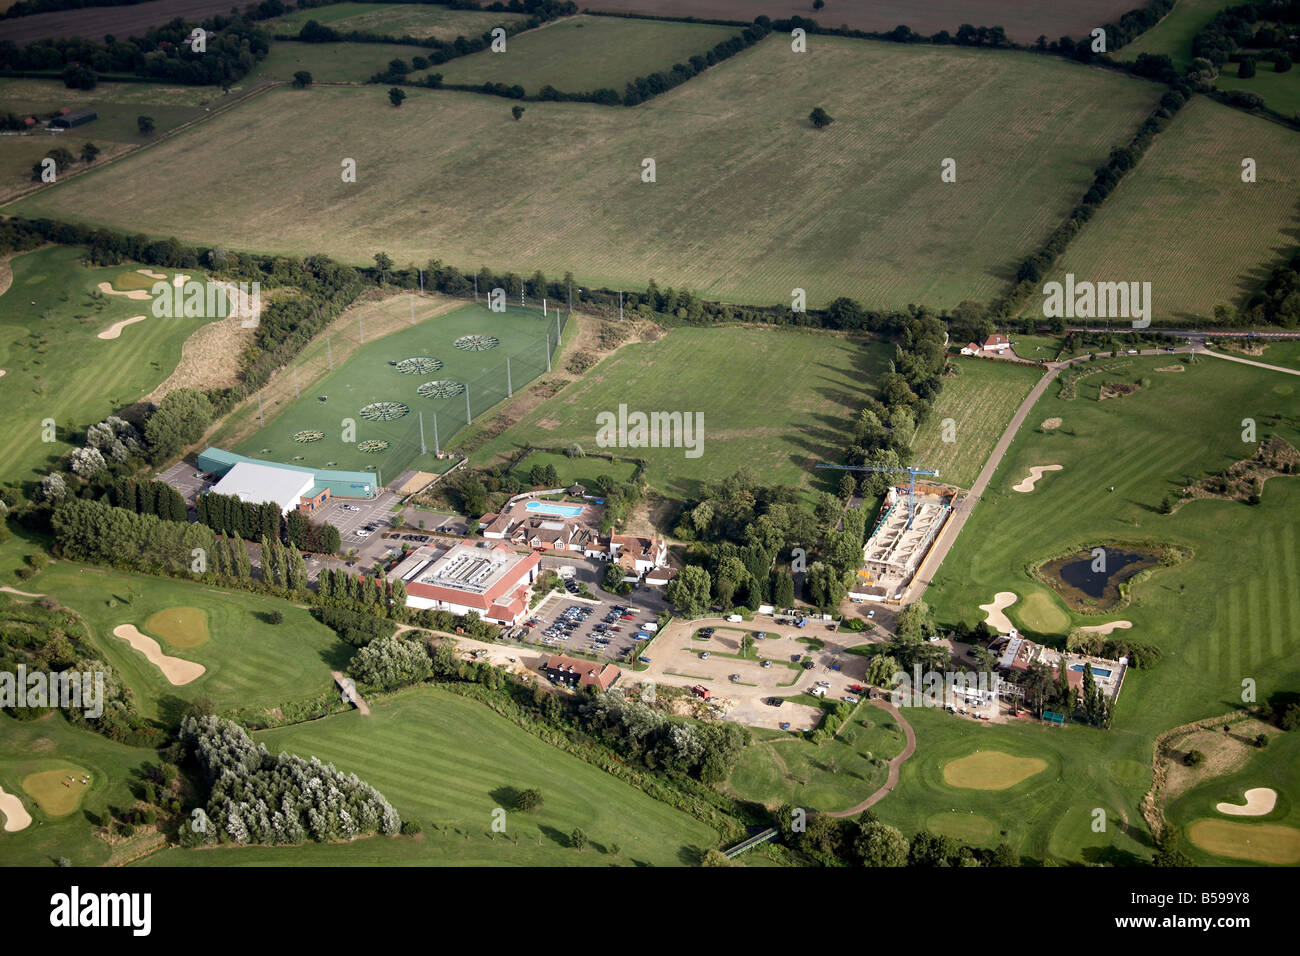 Vue aérienne au sud-est de la forêt d'Epping Golf and Country Club House piscine Hall Rockfield Road abréger les champs Pays UK Banque D'Images